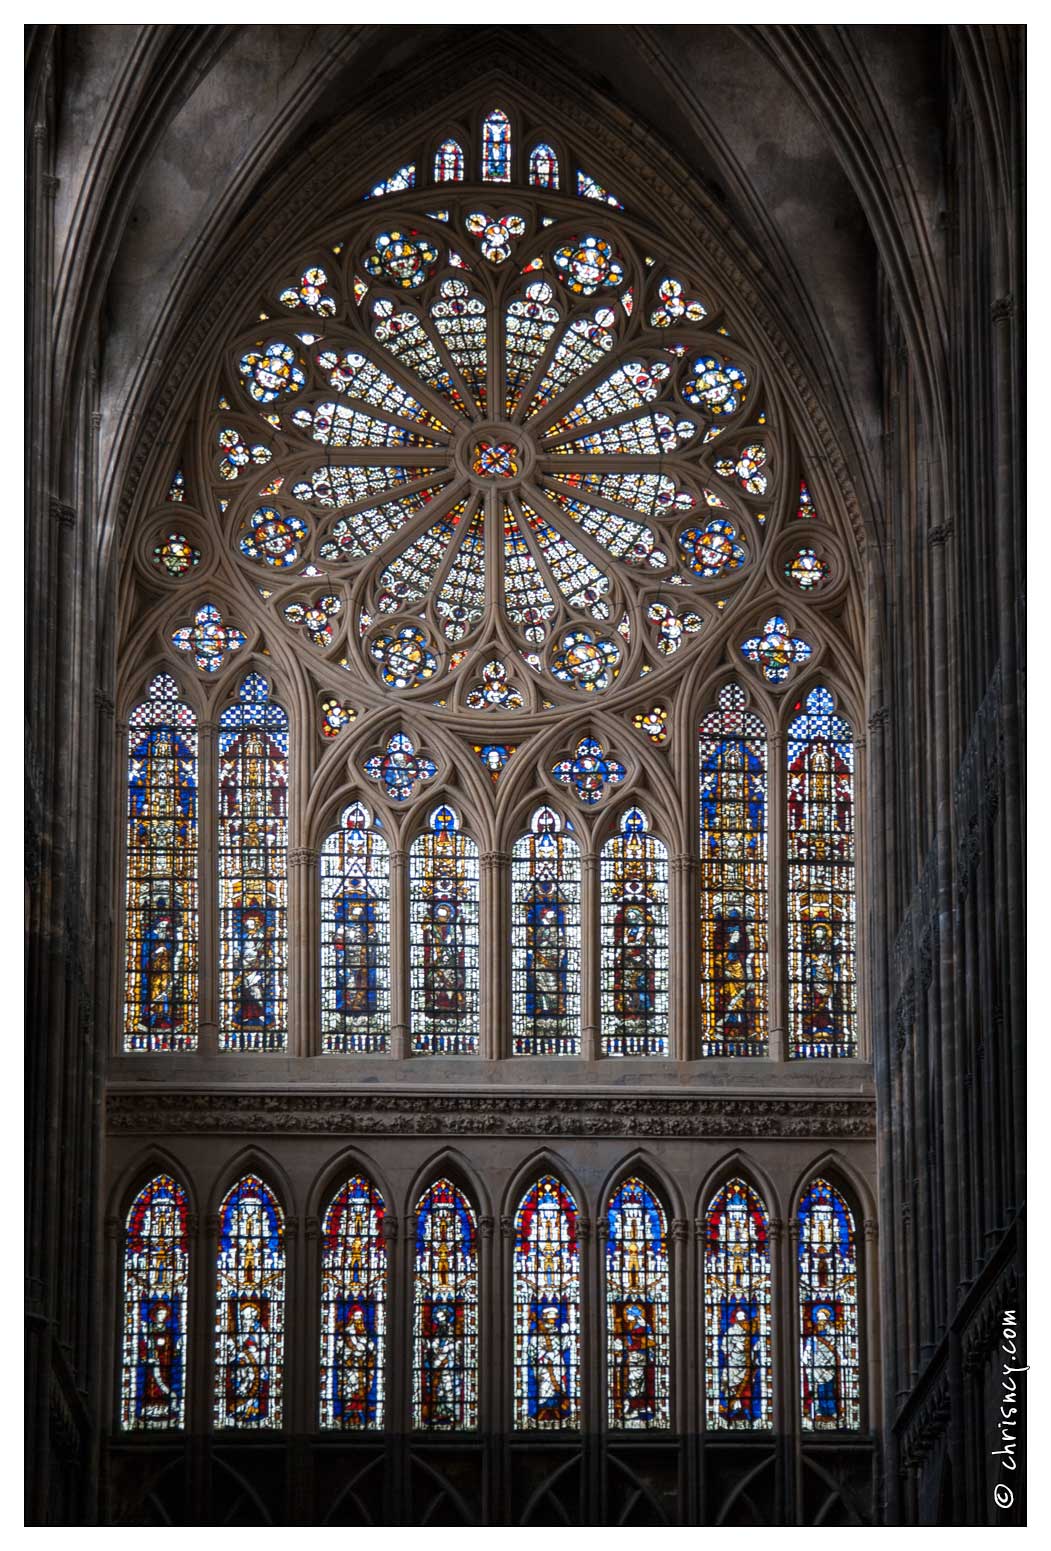 20080808-17_1832-Metz_Cathedrale.jpg